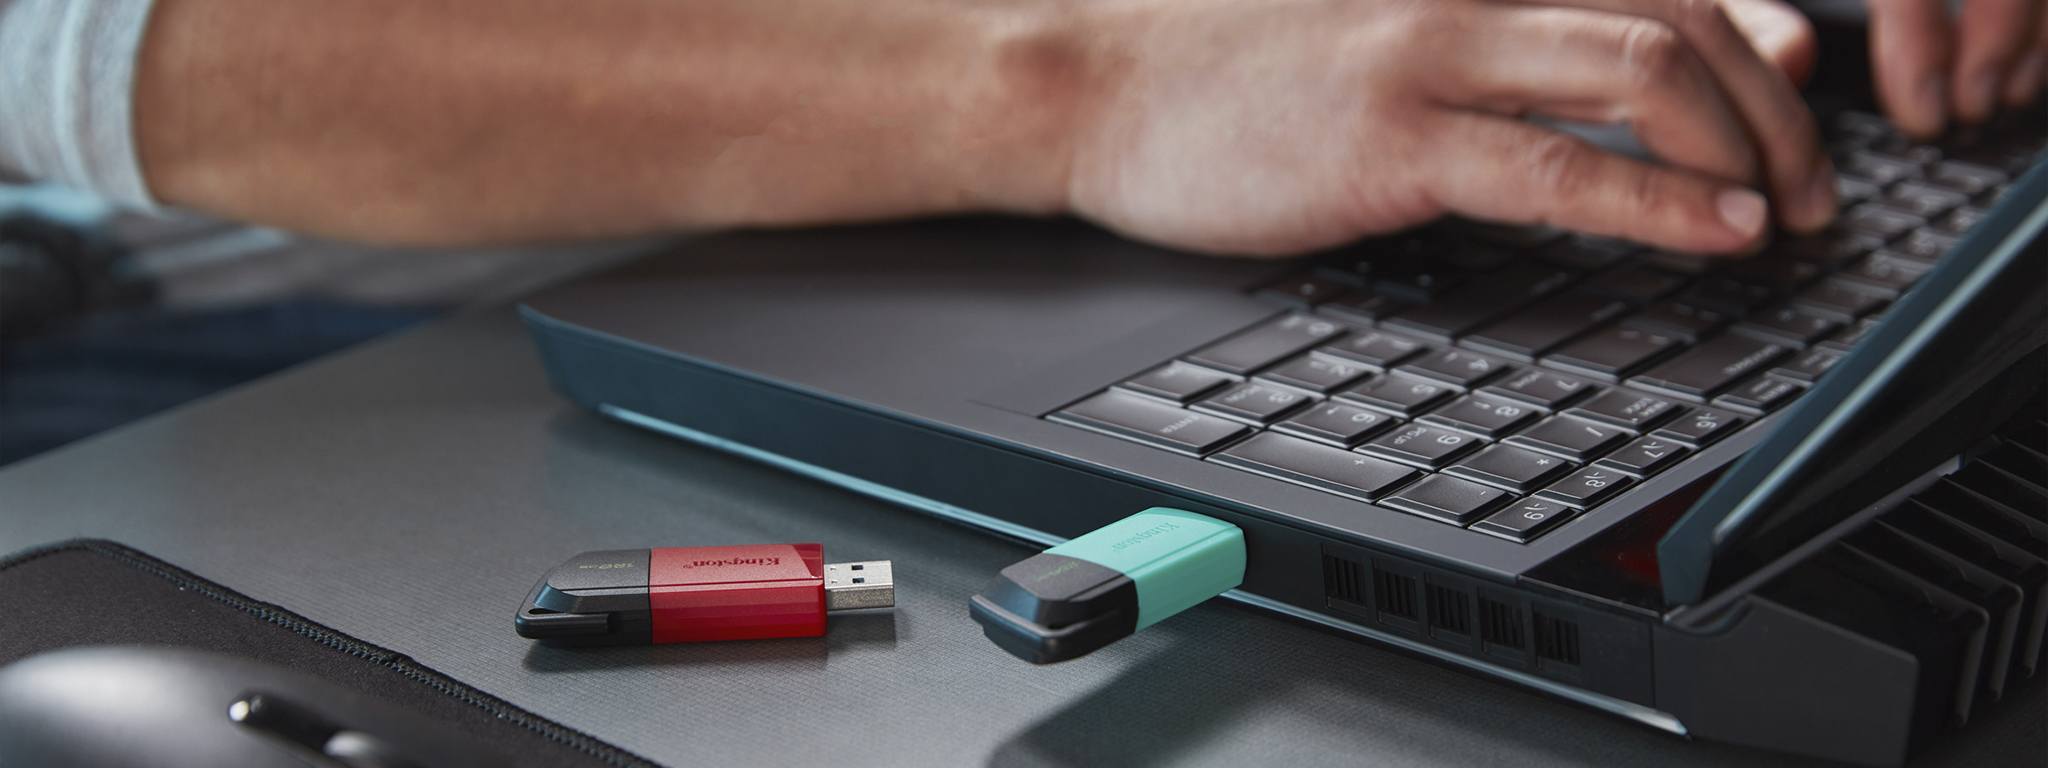 Biri yeşil kapaklı diğeri kırmızı kapaklı iki DT Exodia M USB, bir masanın duruyor ve arka planında dizüstü bilgisayar kullanan bir kişi var